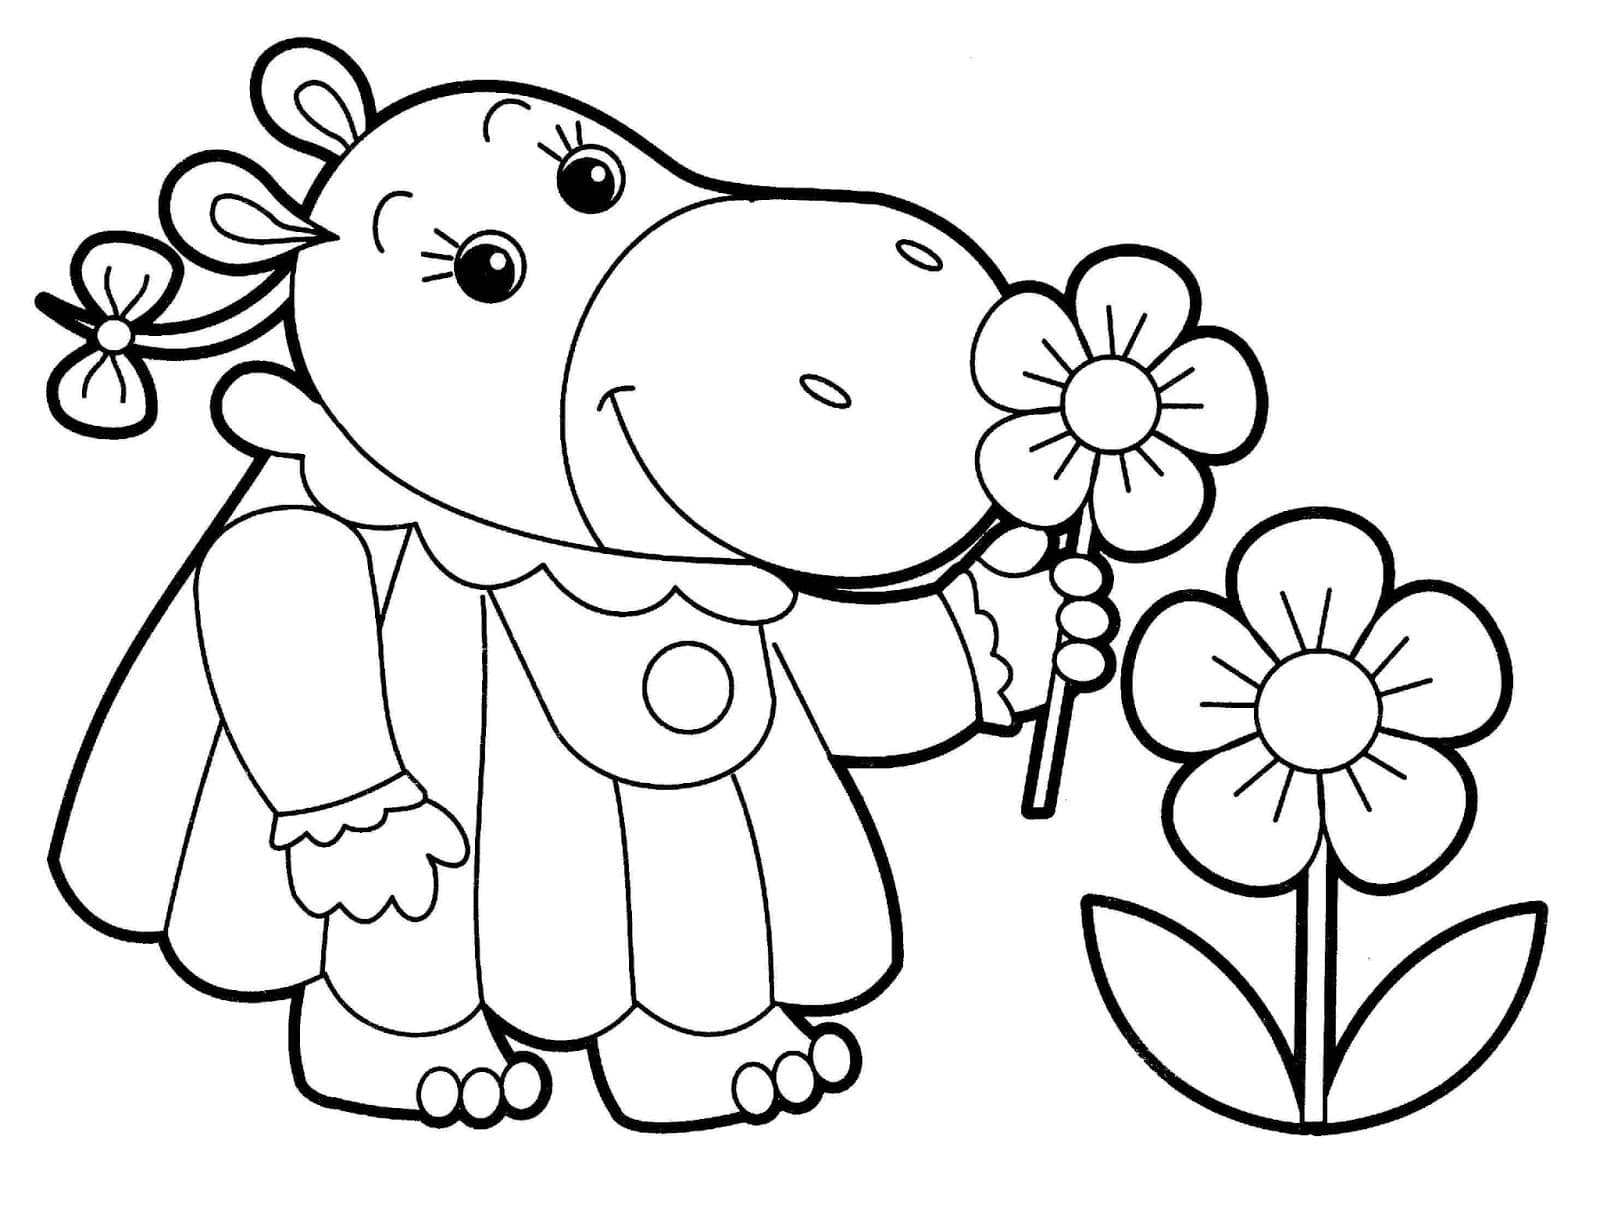 Простые раскраски для детей 2, 3, 4 лет: развивающие, цветы, деревья, транспорт, одежда, овощи и фрукты, русские сказки